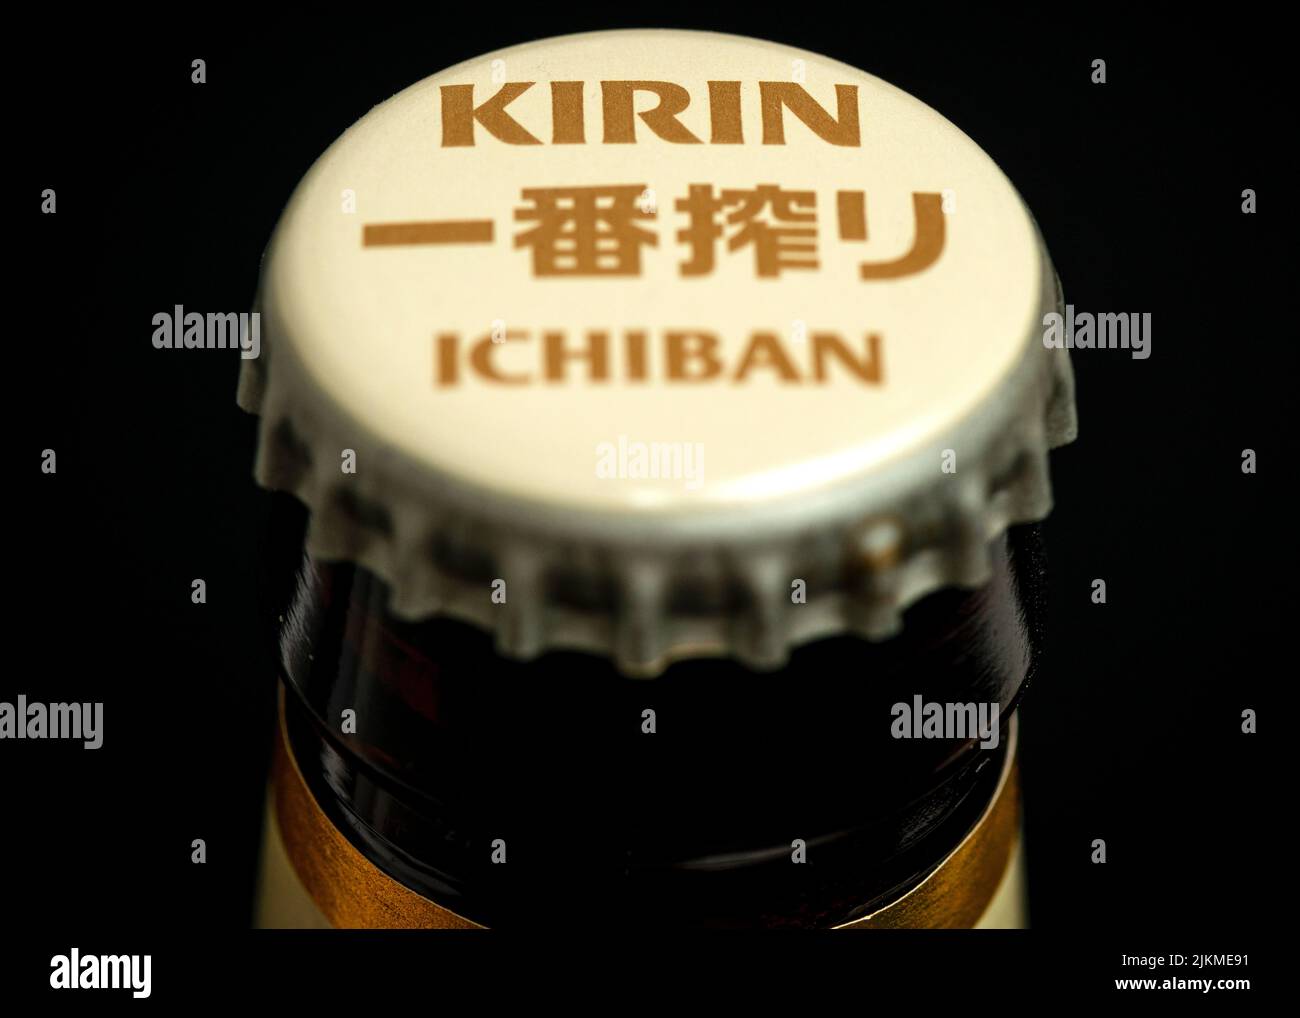 Kirin Ichiban Japanese lager beer bottle top cap close up detail Stock Photo